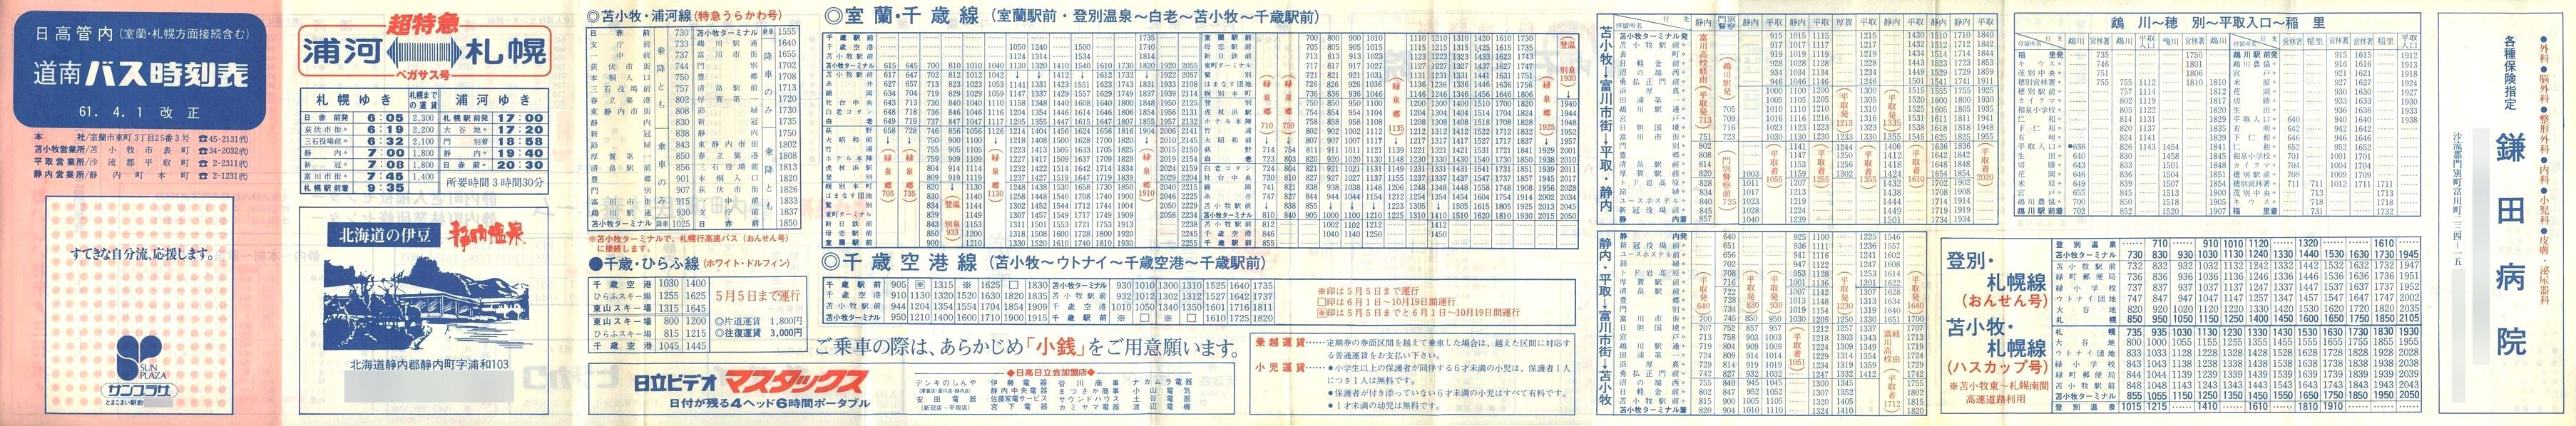 1986-04-01改正_道南バス_日高管内時刻表表面